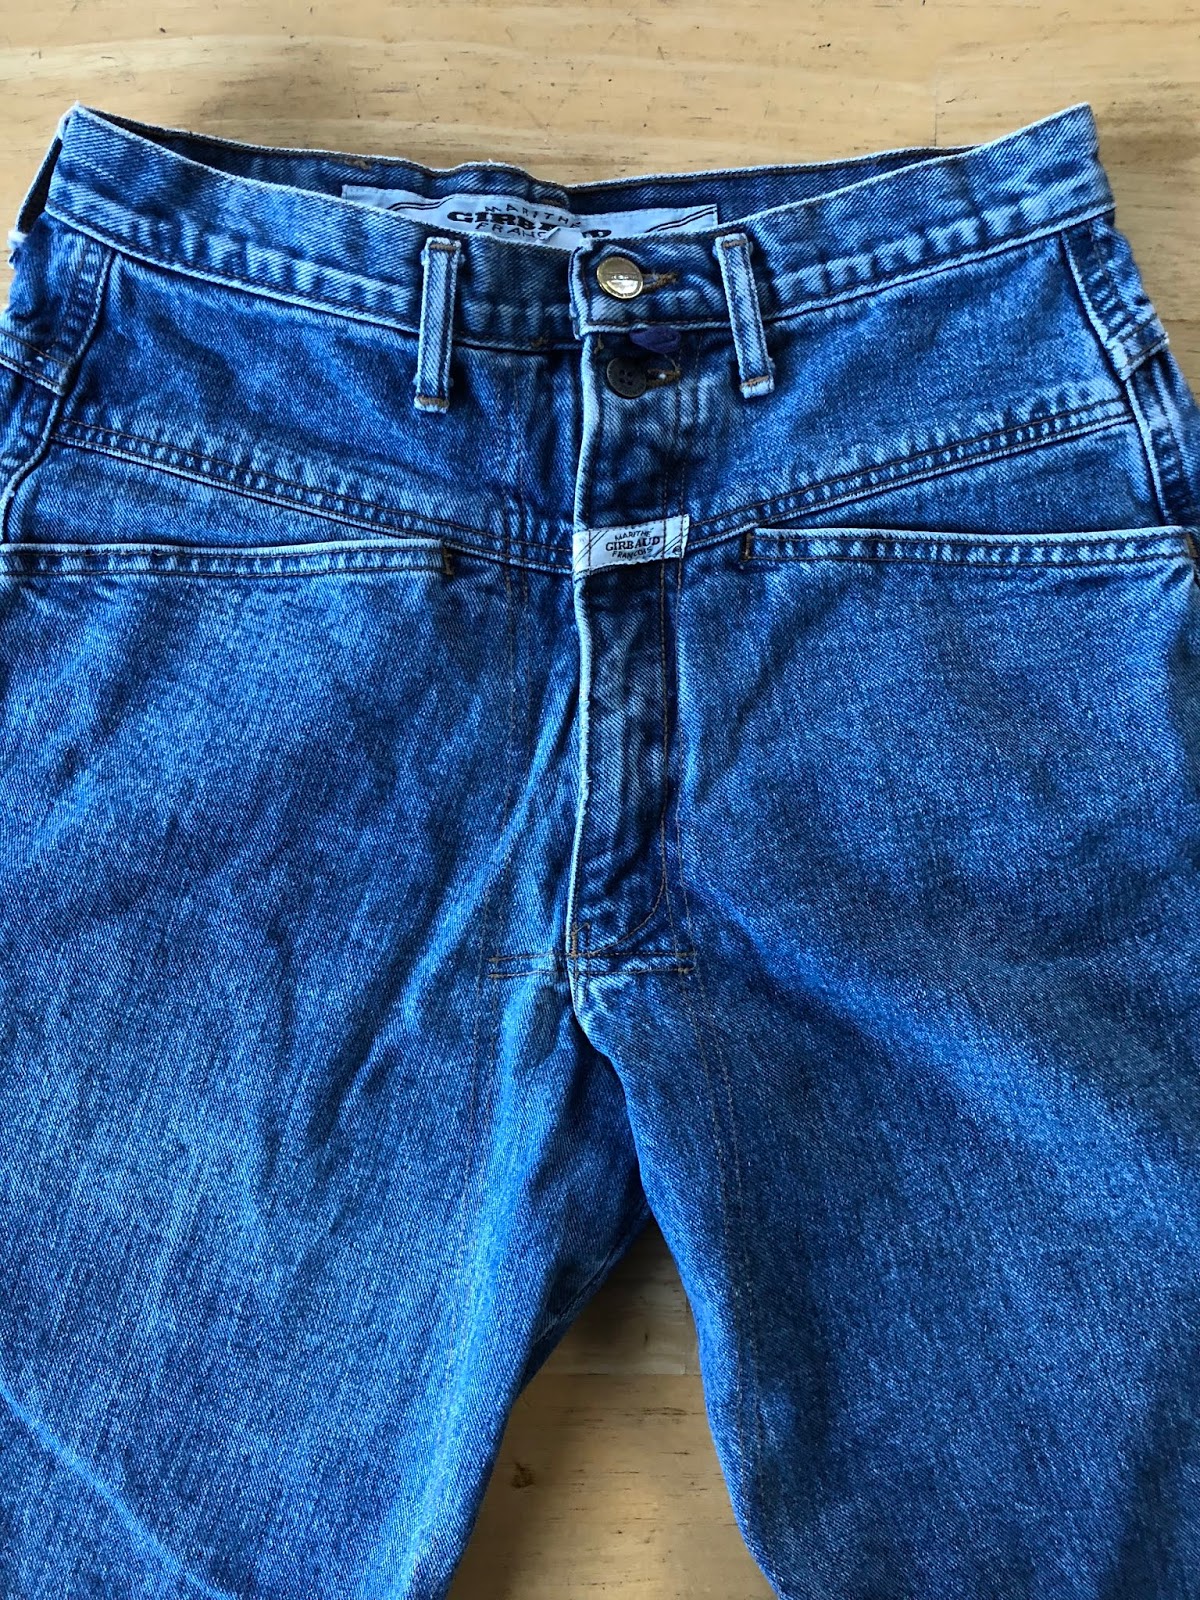 marithe francois girbaud jeans 90s